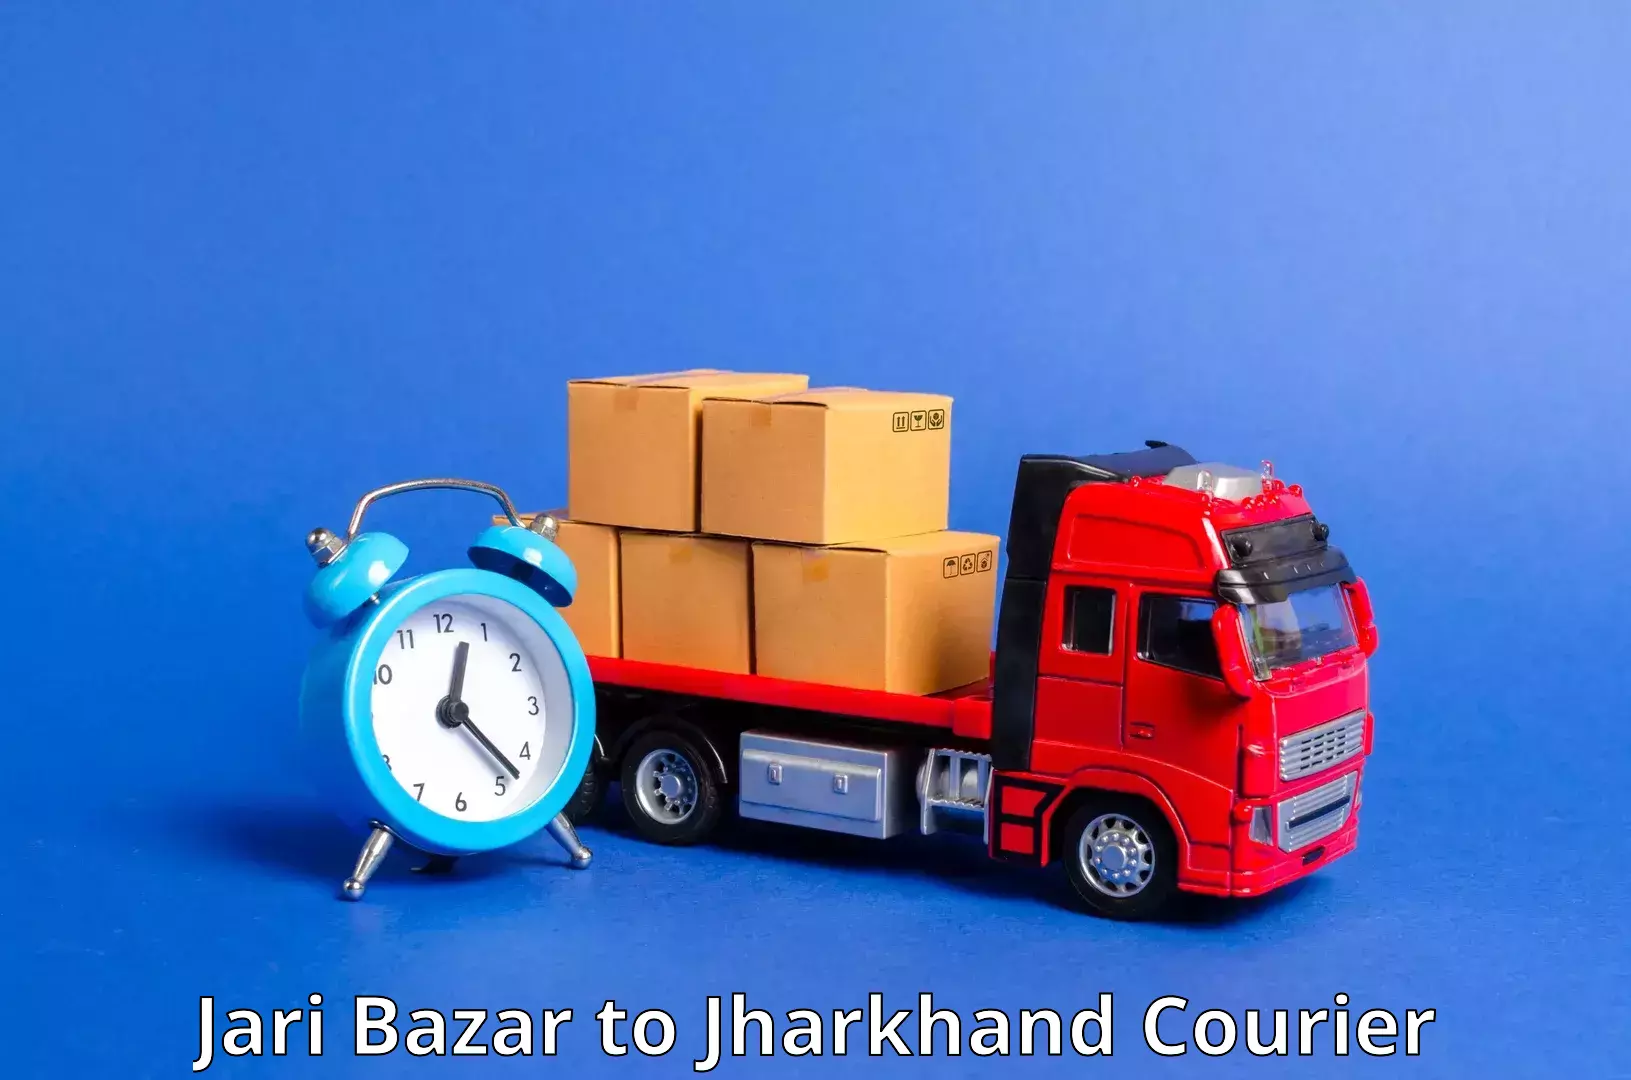 User-friendly courier app Jari Bazar to Chandwa